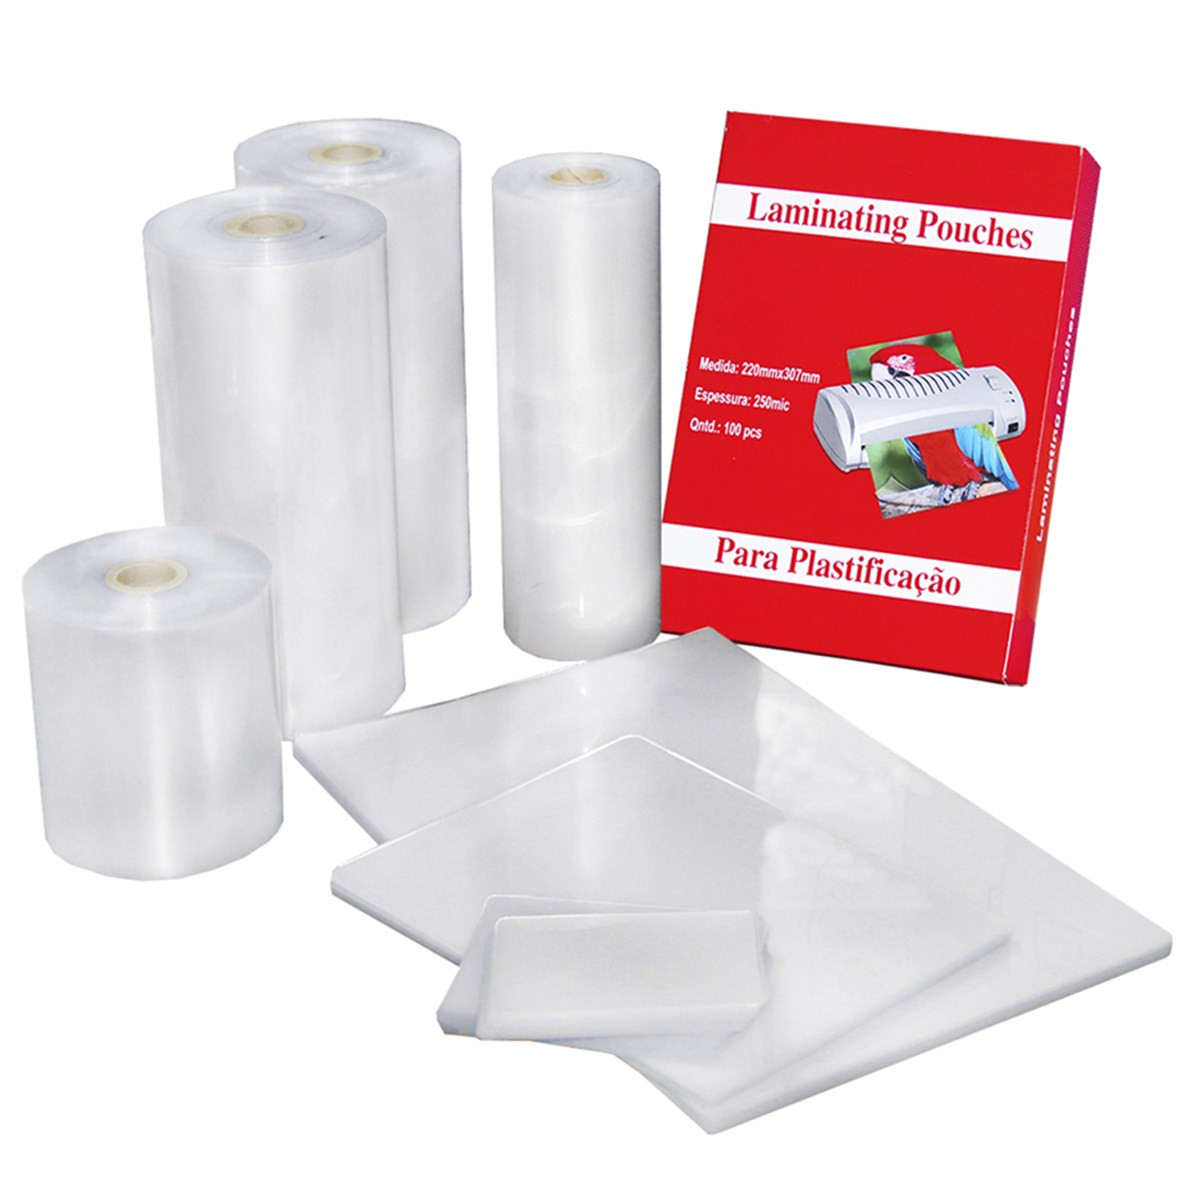 Plástico para Plastificação Polaseal Tamanho A4 125 Mícron Pacote com 100  plásticos em Promoção na Americanas